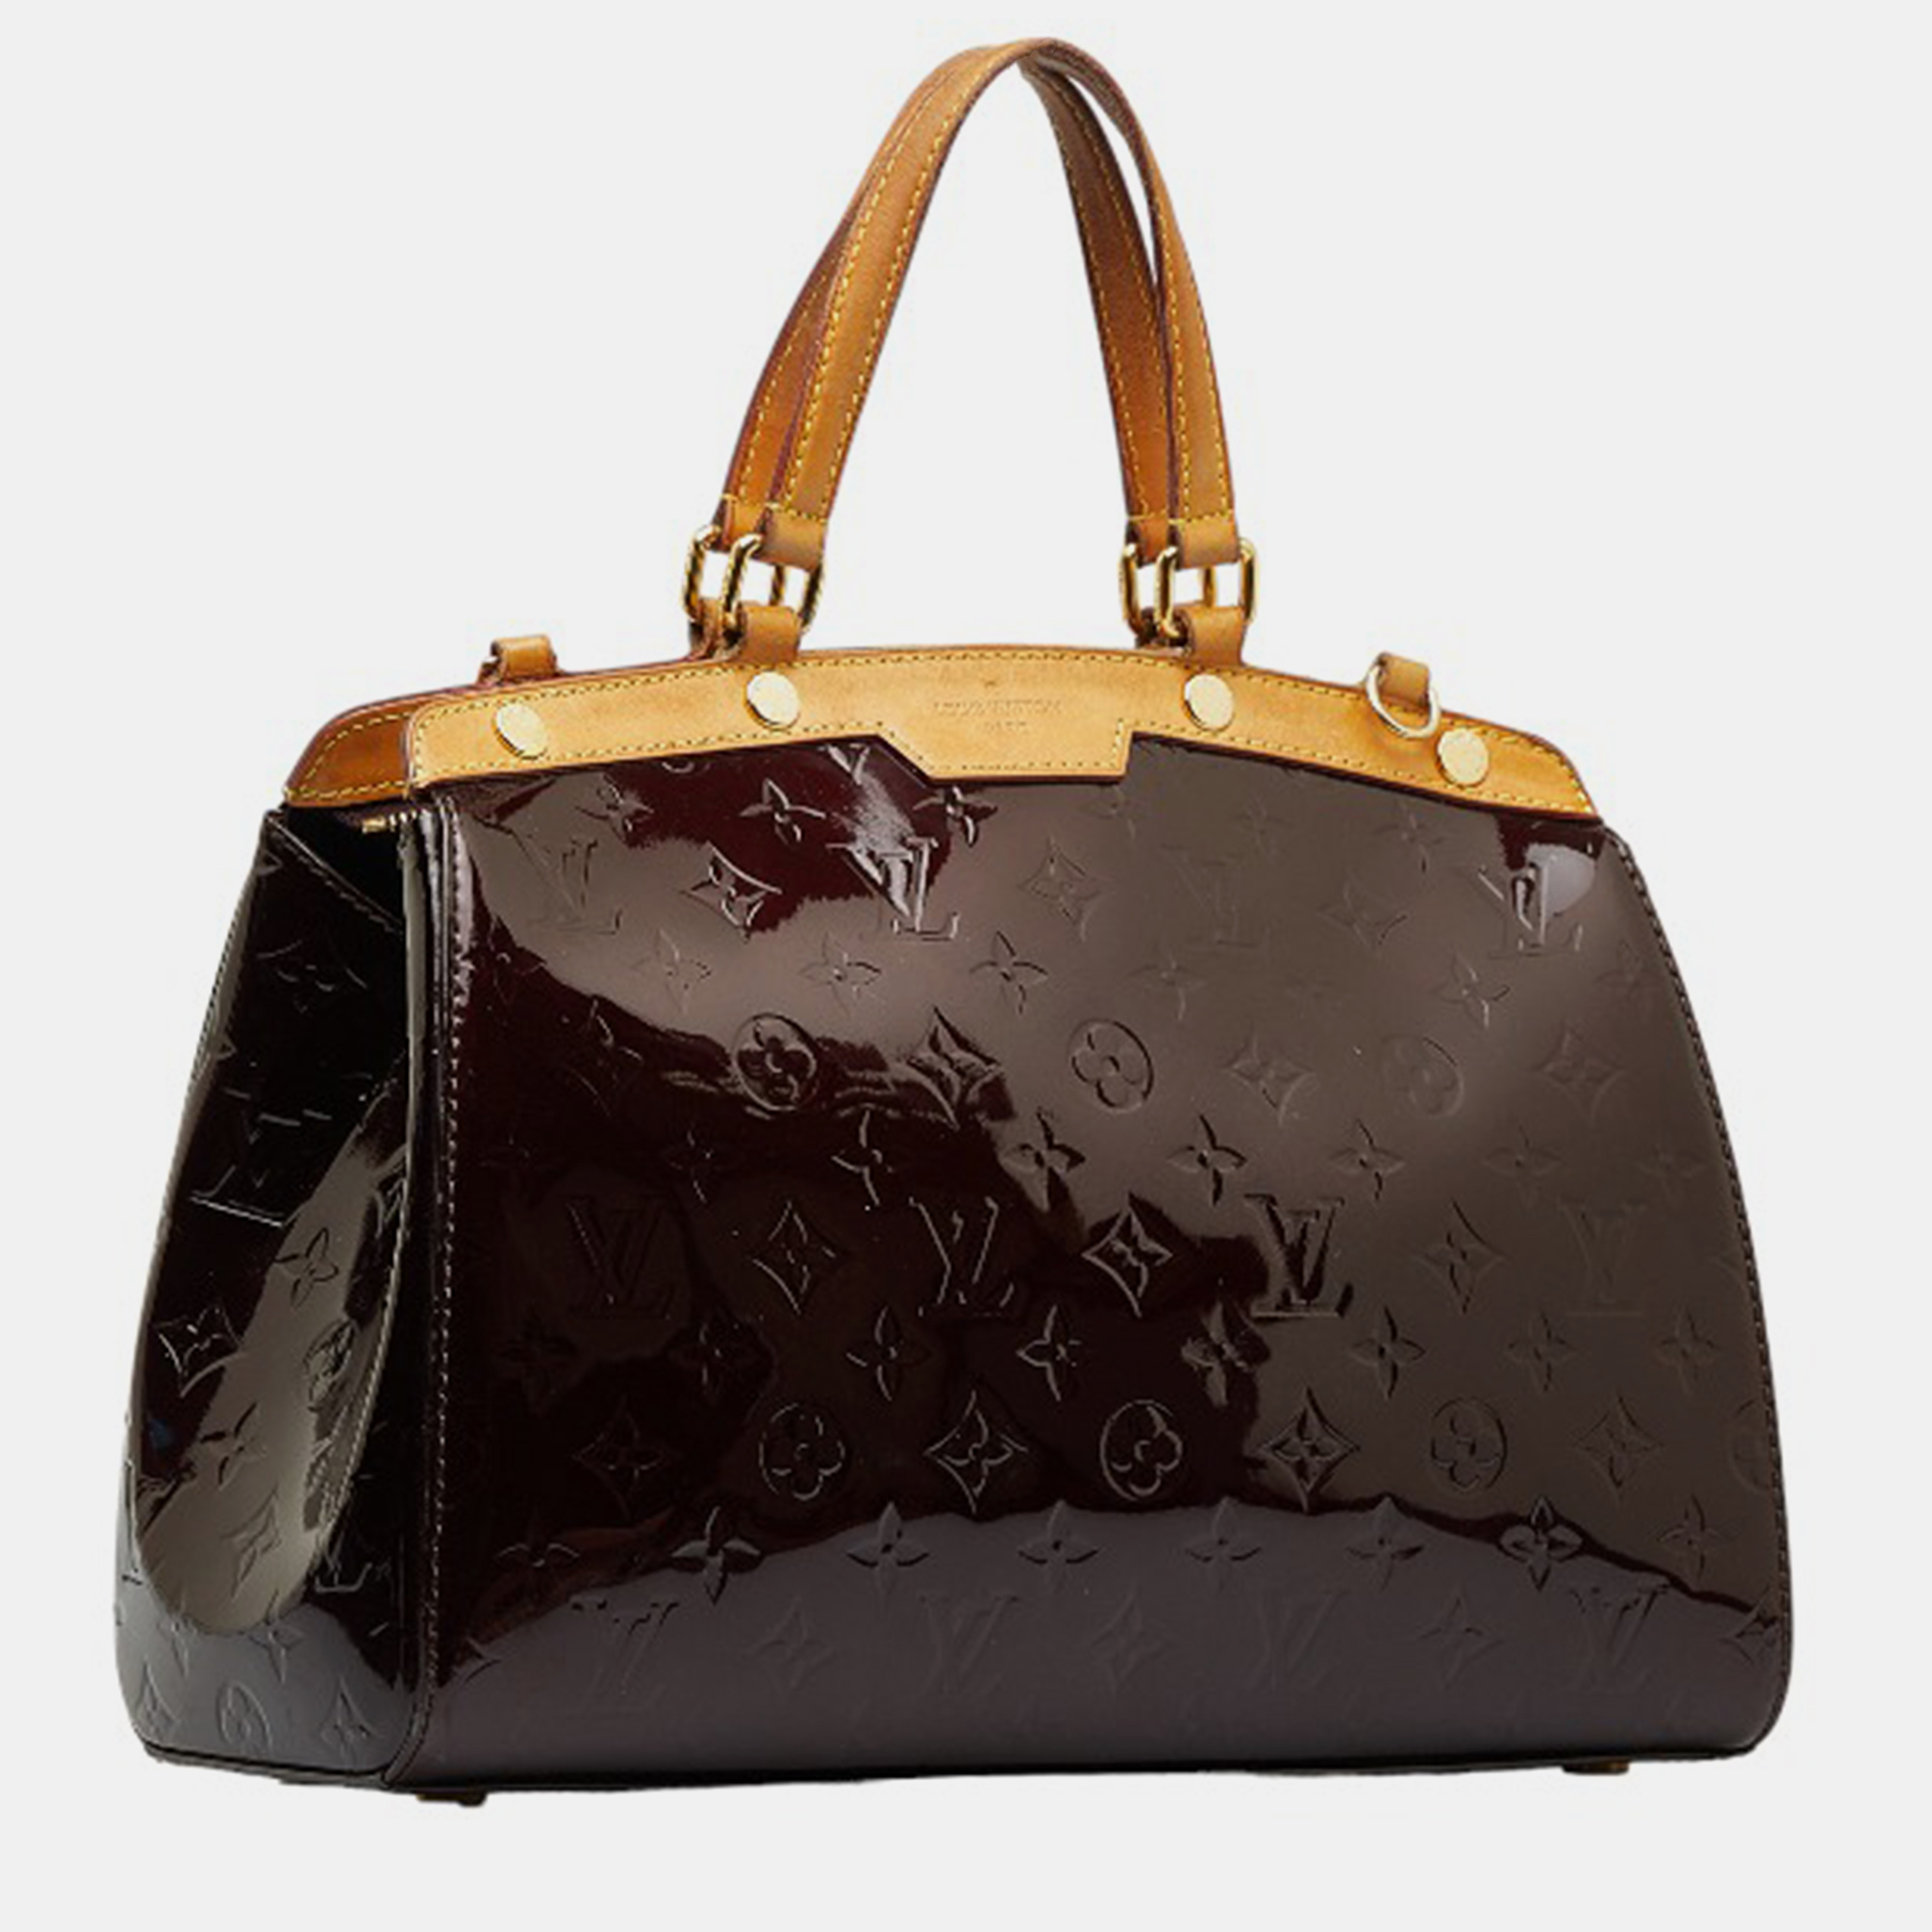 

Louis Vuitton Brown/Beige Patent Leather MM Brea Satchel Bag